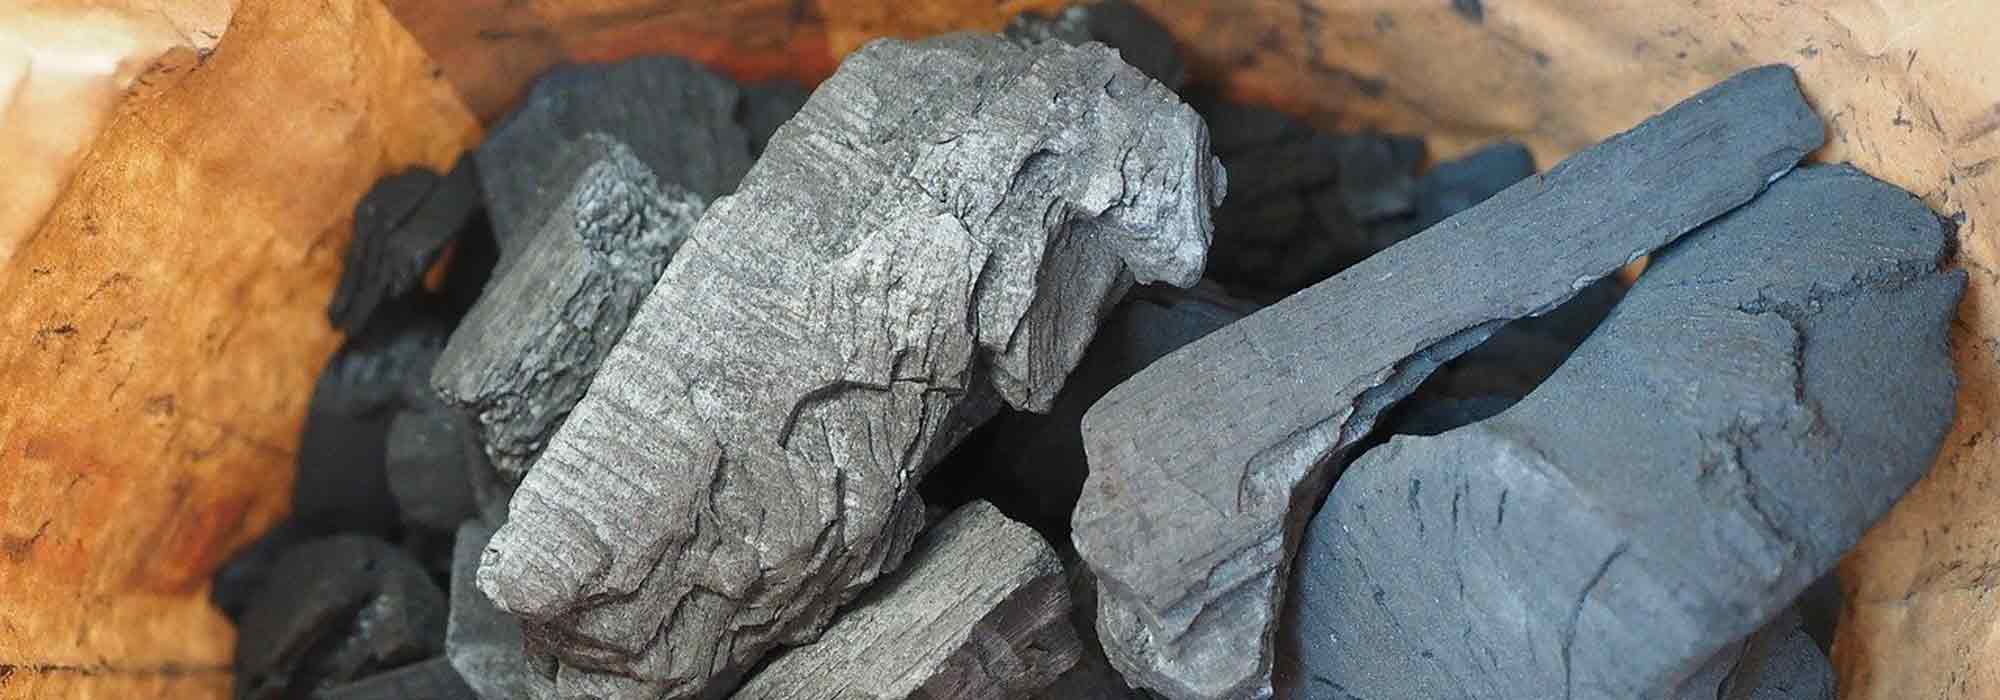 Le charbon de bois au jardin